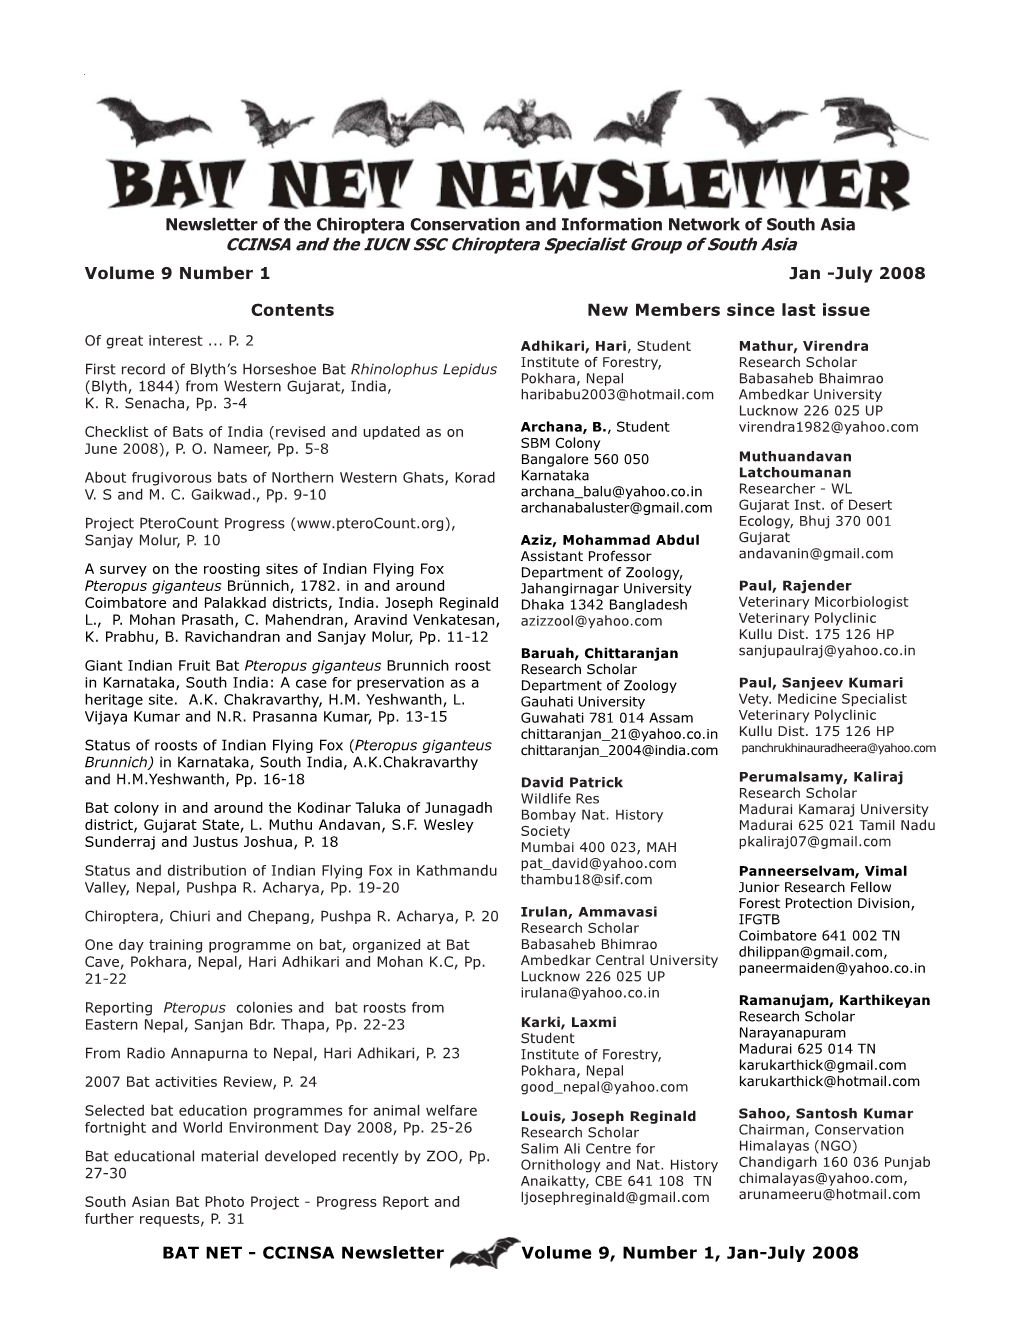 One Day Training Program on Bat, Organized at Bat Cave, Pokhara, Nepal